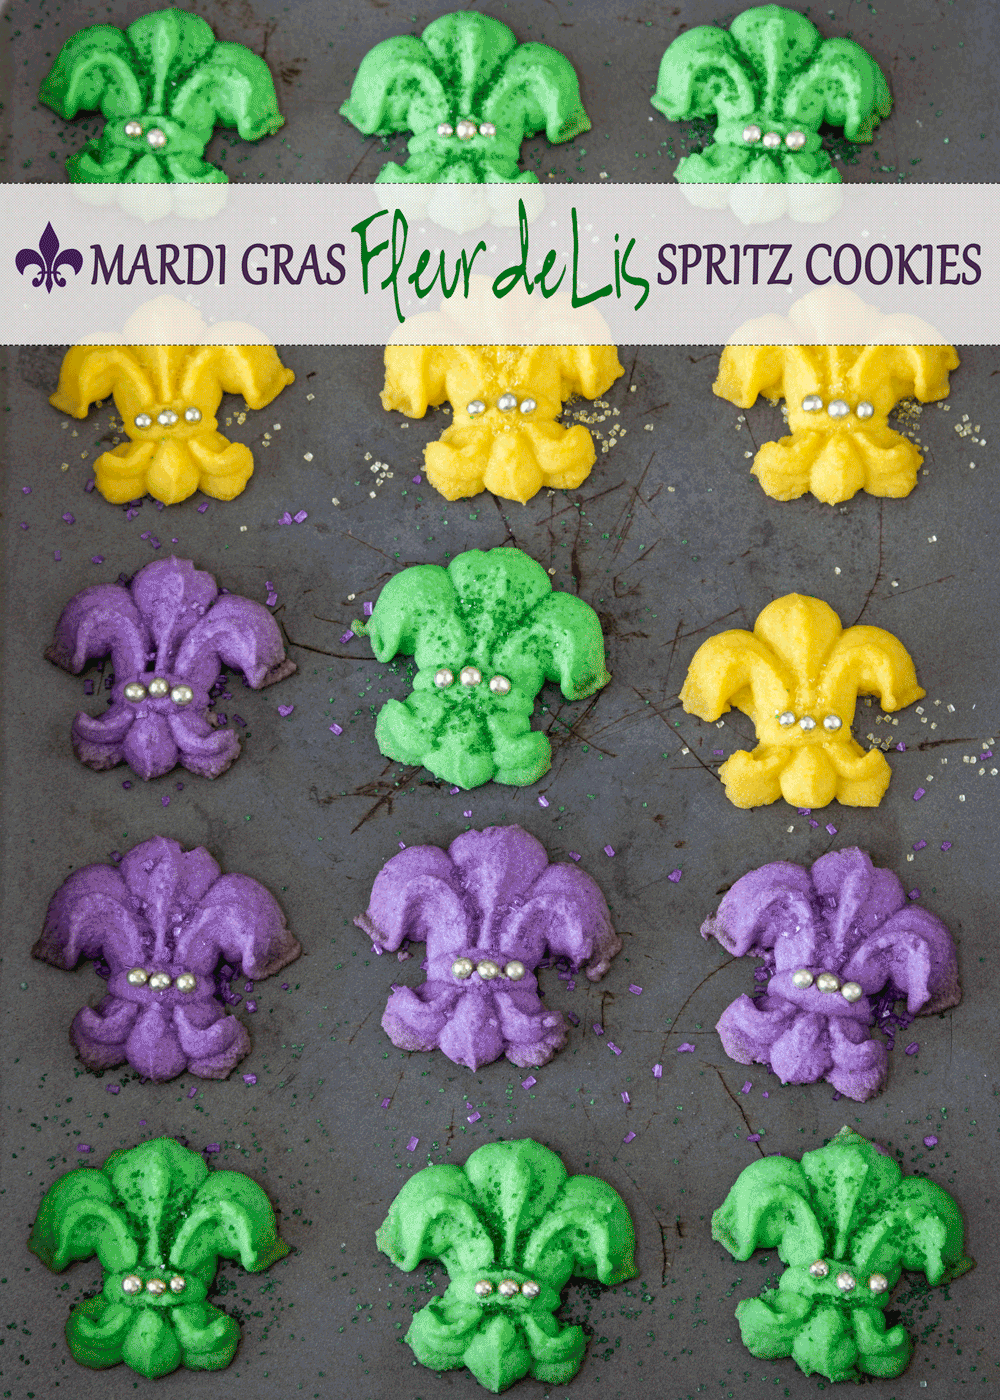 Mardi Gras Fleur de Lis Spritz Cookies - bright, festive and so fun to make - lassez les bon temps rouler!